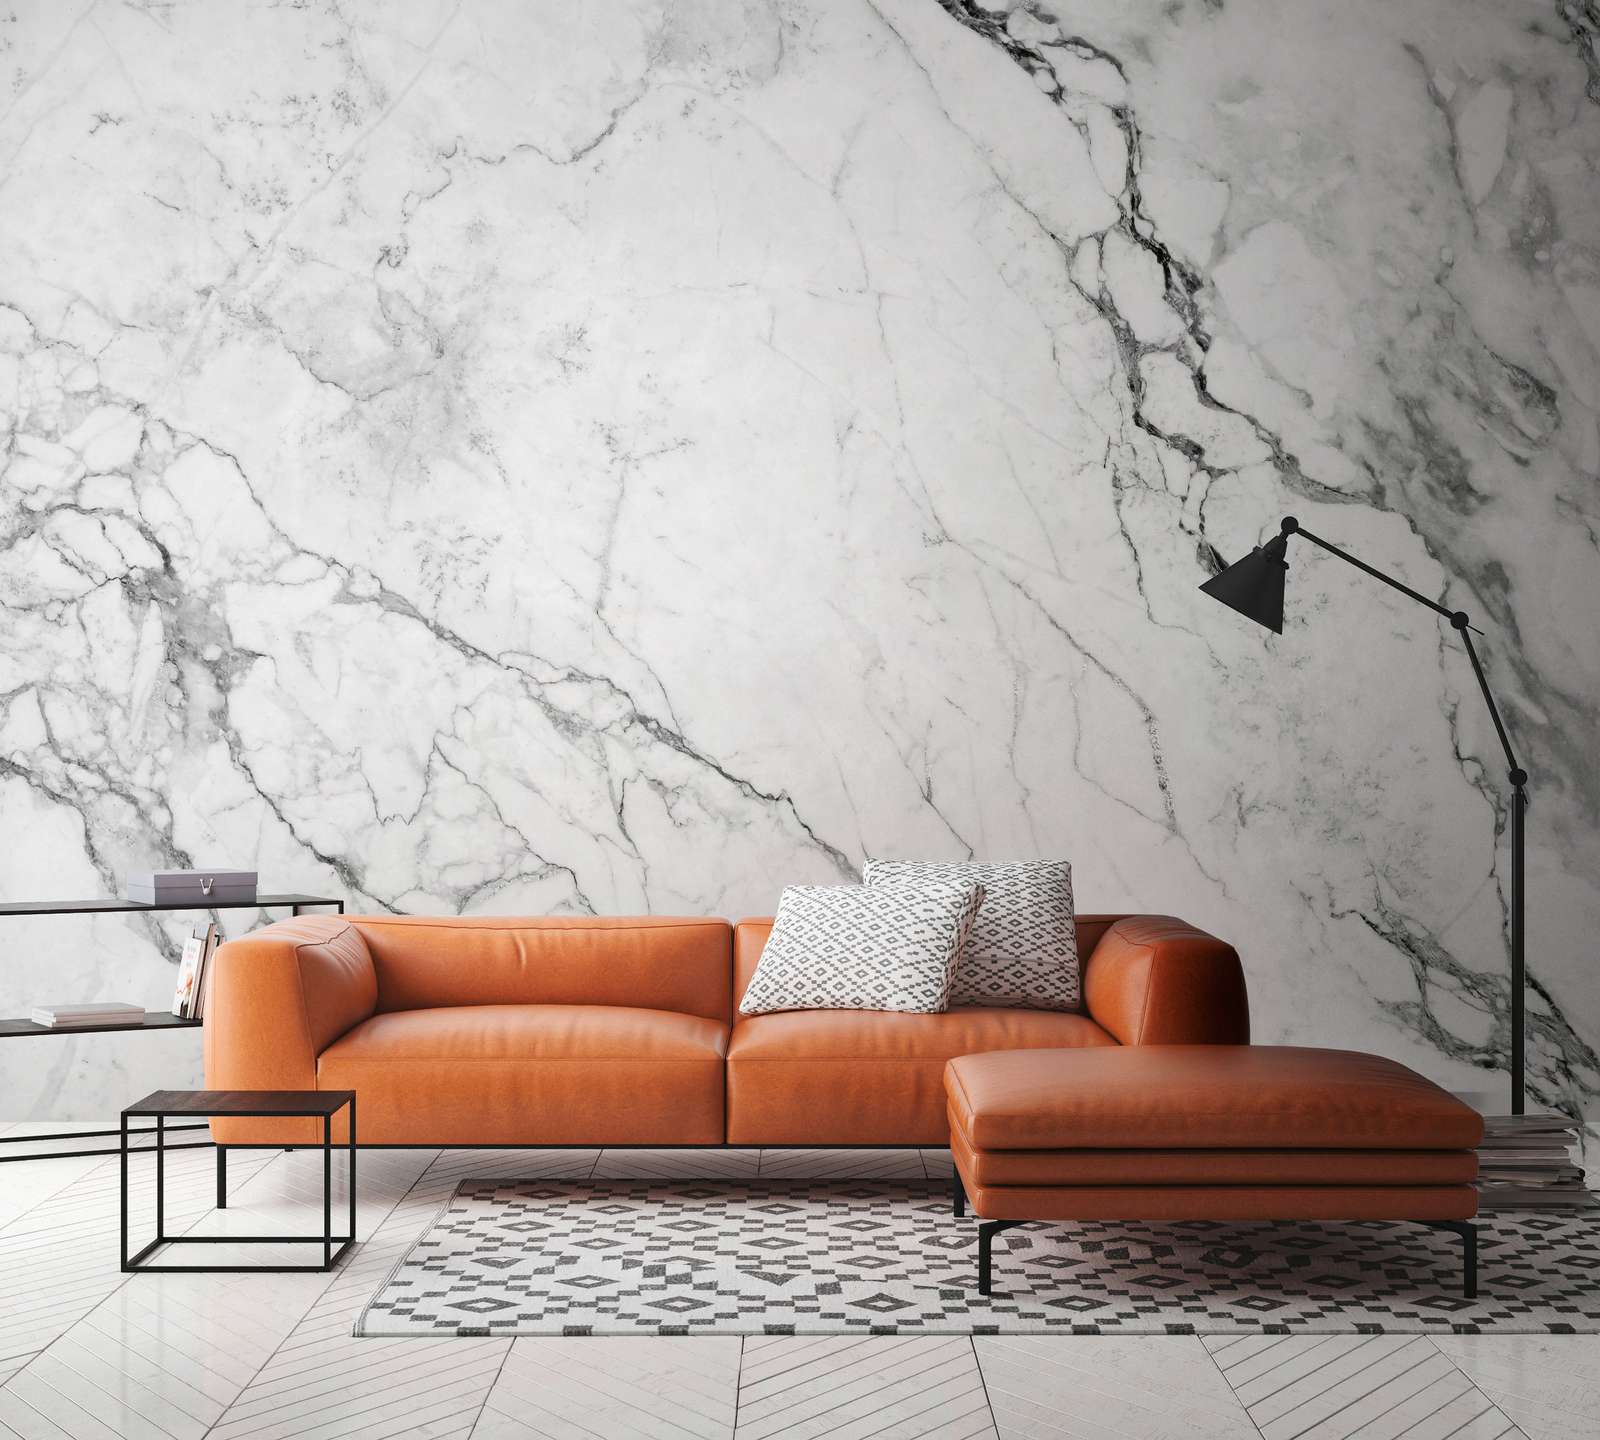             Papier peint panoramique aspect marbre moderne - gris, blanc
        